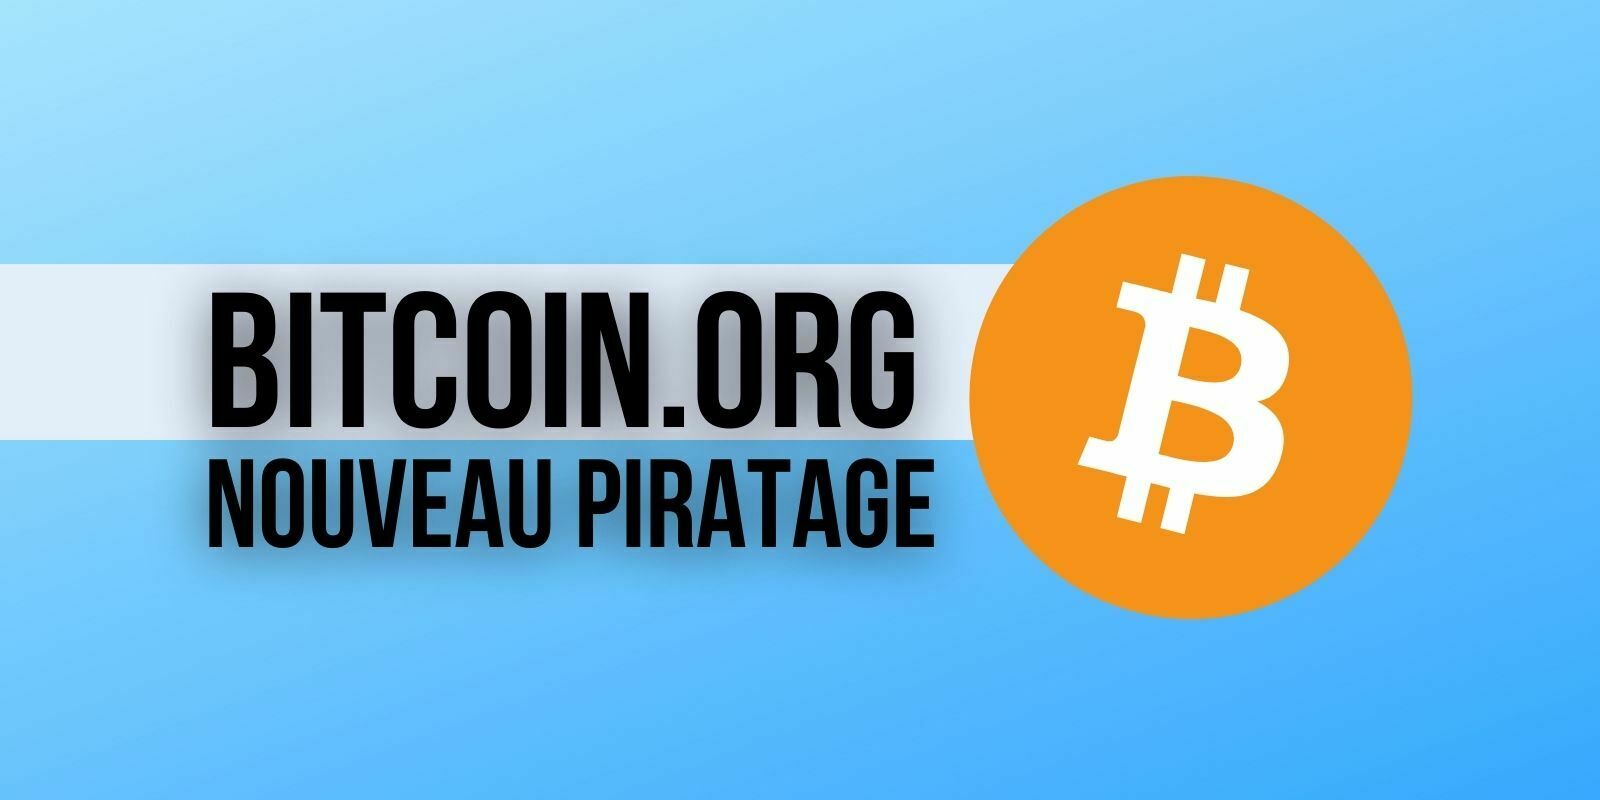 Bitcoin.org a été piraté : le site Web affichait une arnaque au Bitcoin (BTC)